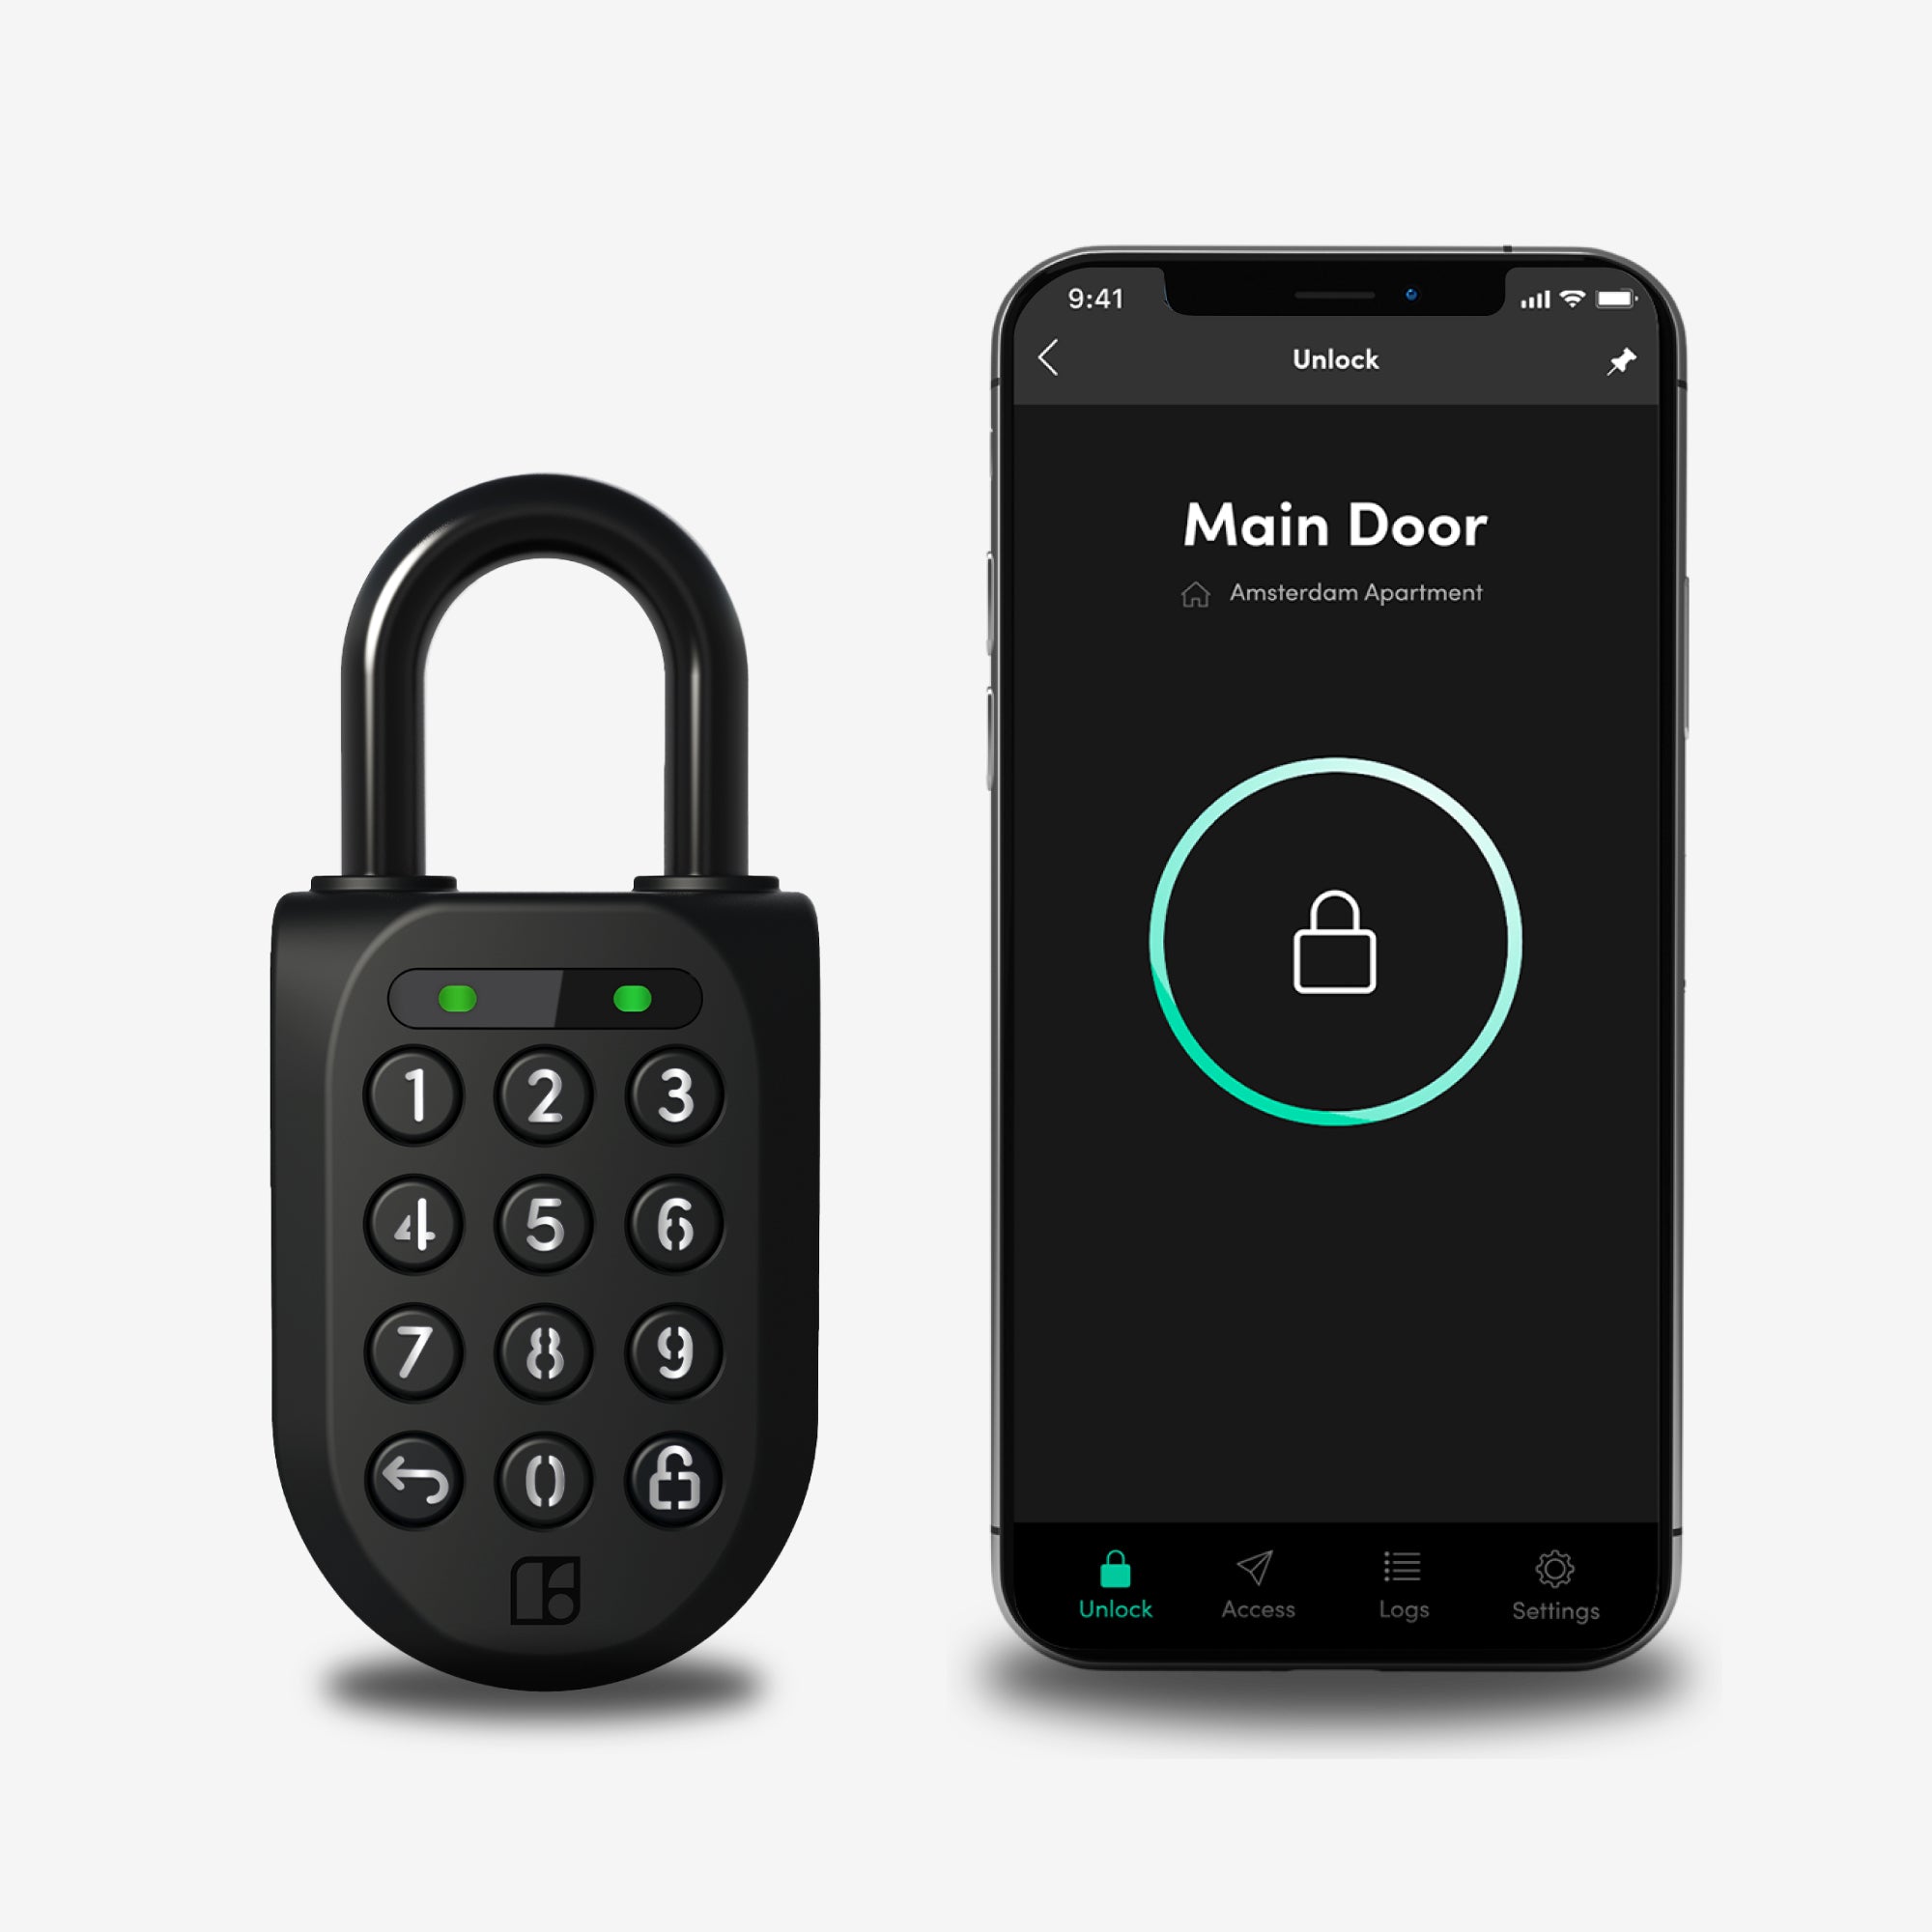 Cerradura Inteligente Igloohome Mortise Touch, con acceso vía app, lector de huella digital, código PIN, tarjeta RFID y llave mecánica de alta seguridad.